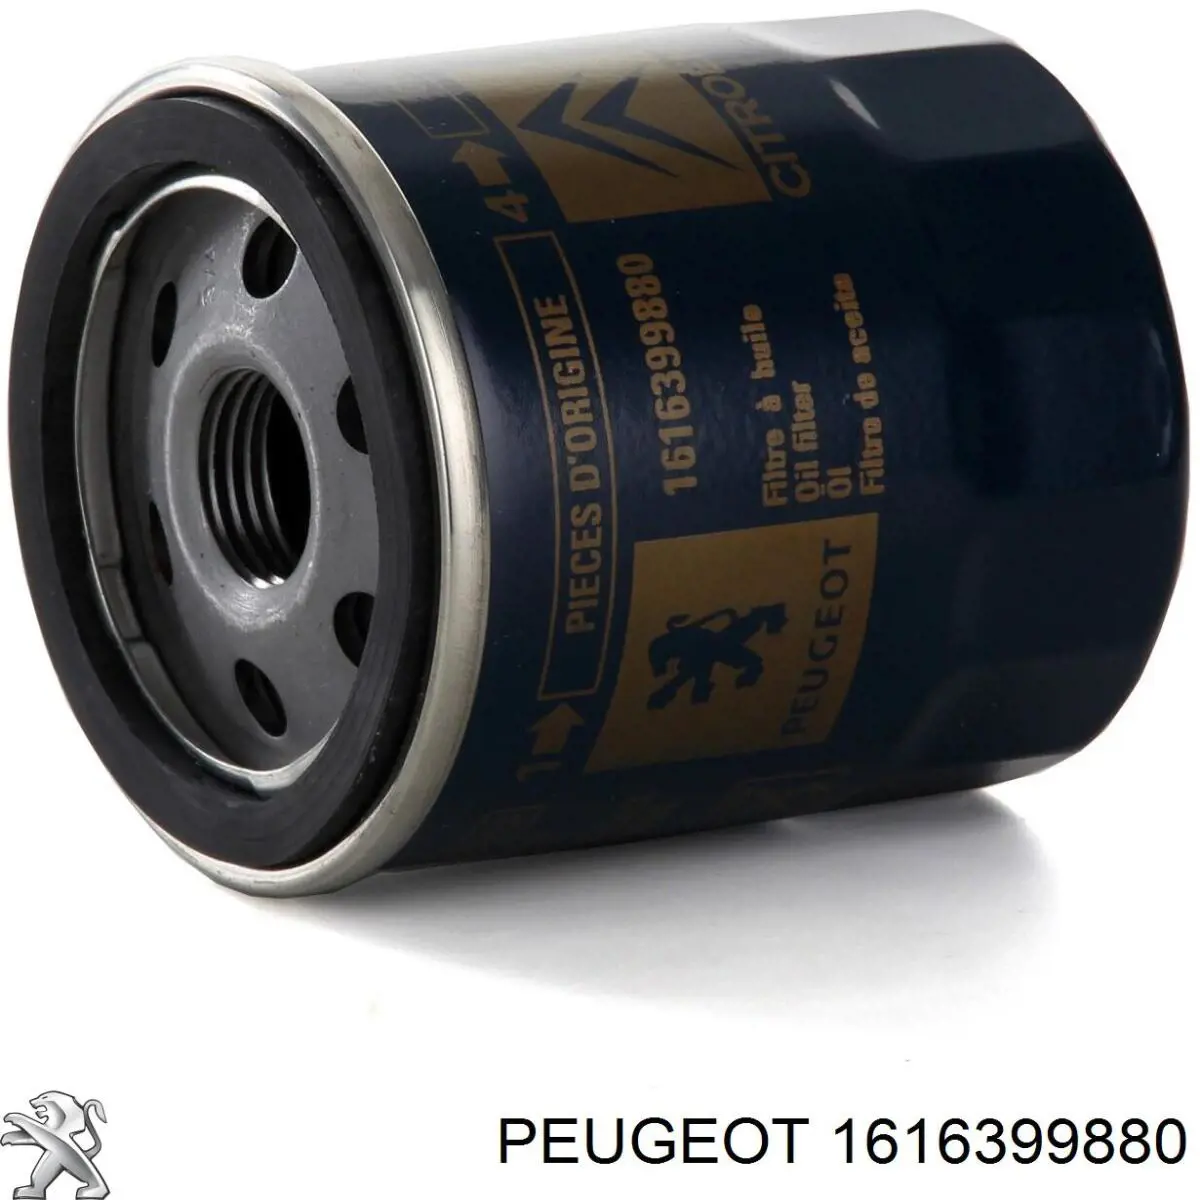 Filtro de aceite 1616399880 Peugeot/Citroen